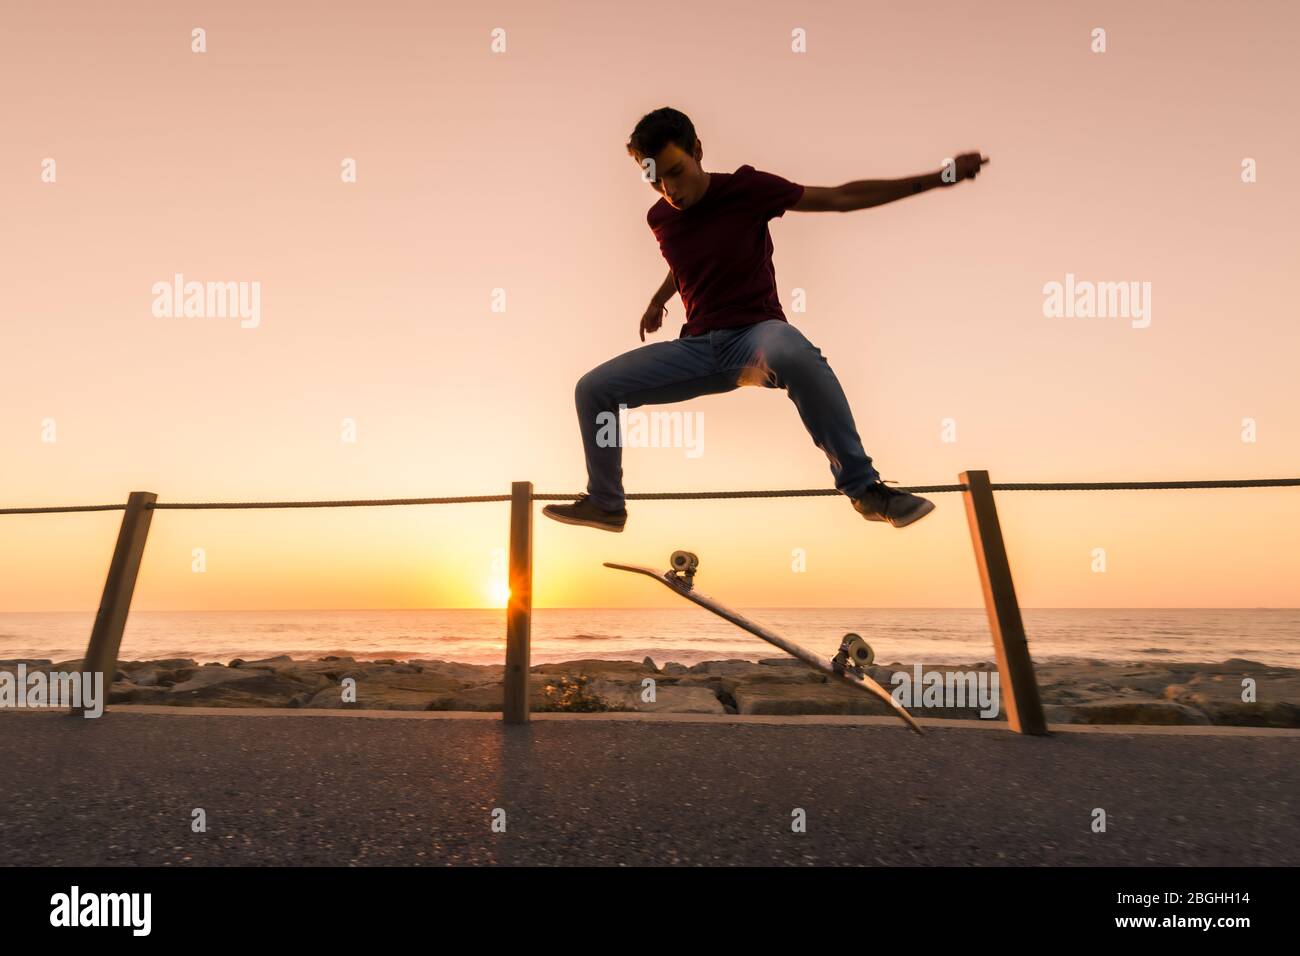 Skater machen Trick Kickflip gegen den schönen orangefarbenen Sonnenuntergang. Stockfoto